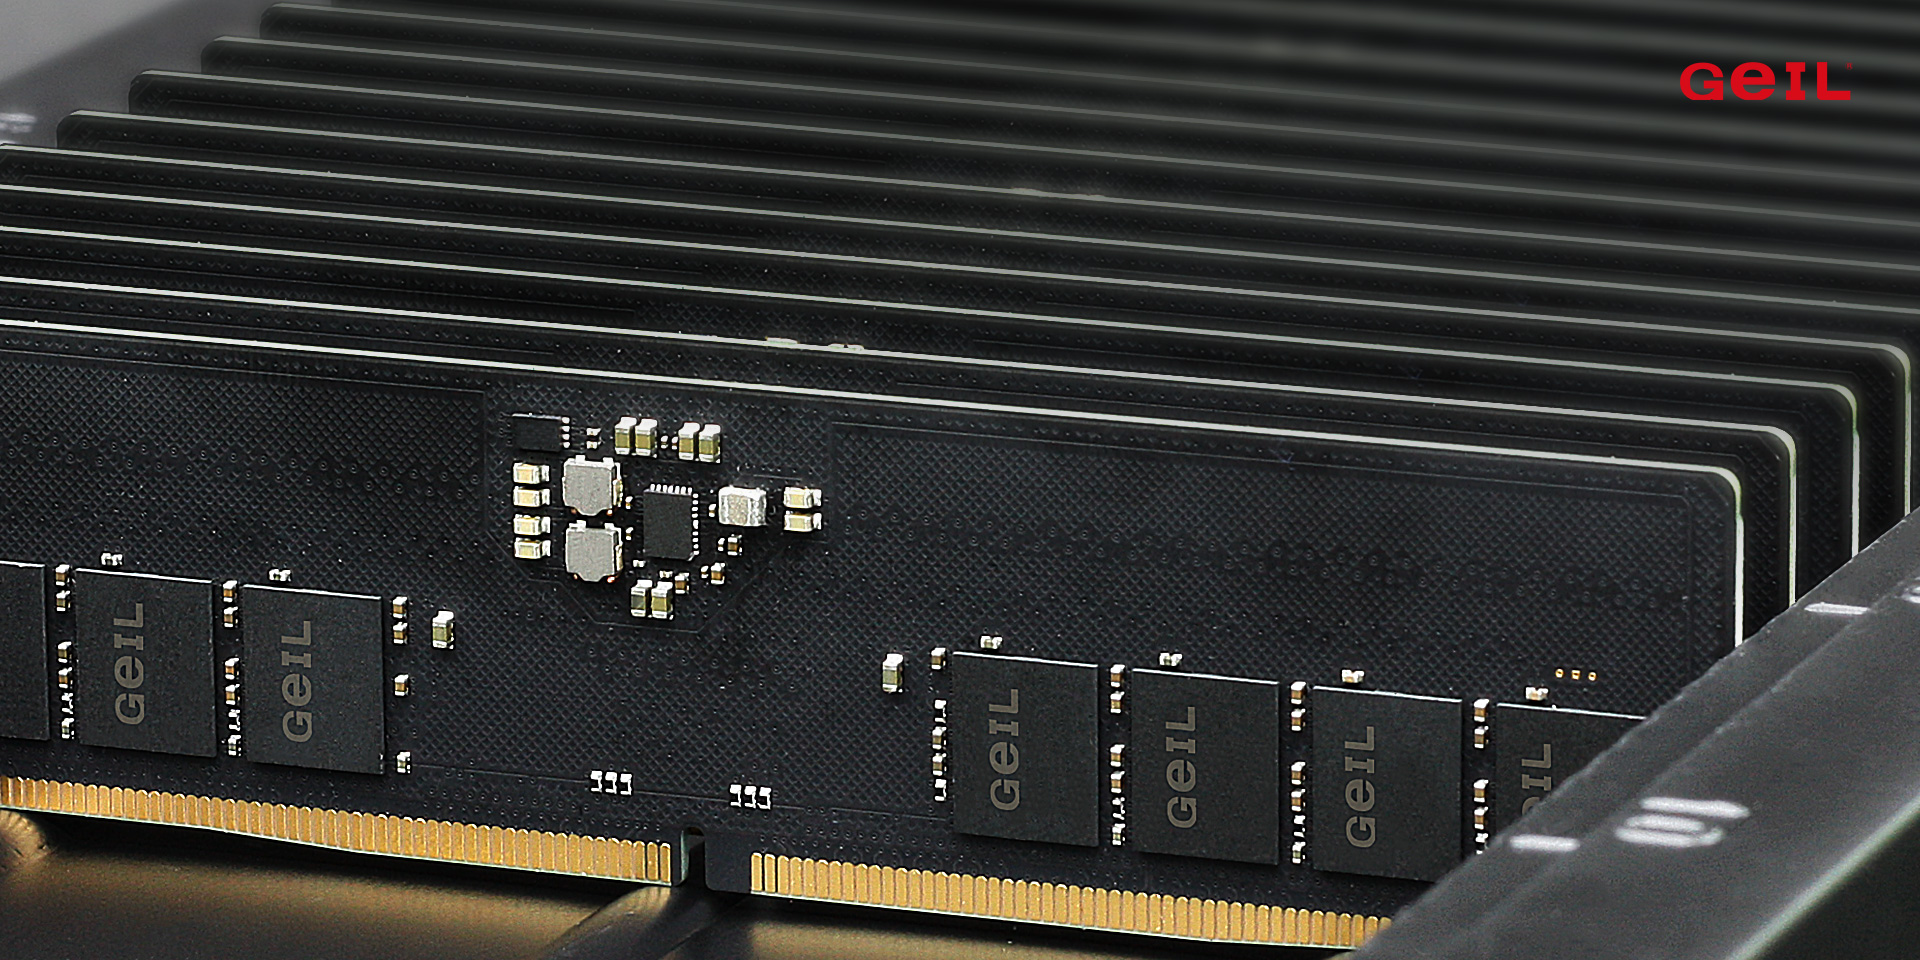 Micron confirme ce que nous savions déjà, une mauvaise alimentation en mémoire DDR5 est liée à des pénuries de PMIC et de VRM, de faibles chances de disponibilité s’améliorant en 2022